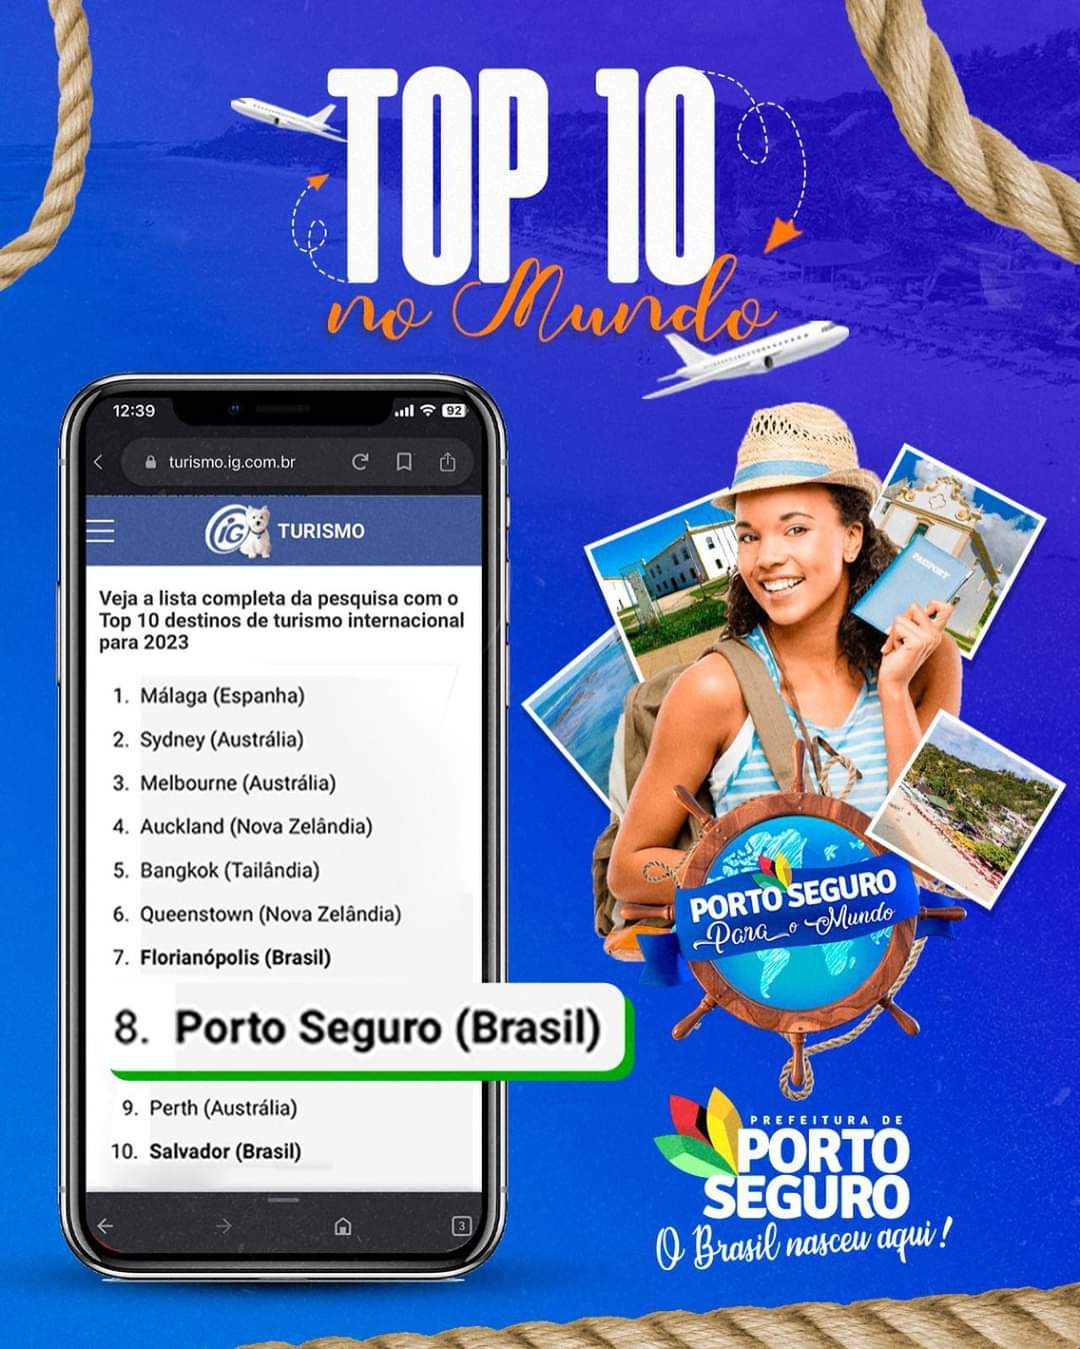 TOP 10 / PORTO SEGURO NO TOPO DA ROTA TURÍSTICA NO MUNDO